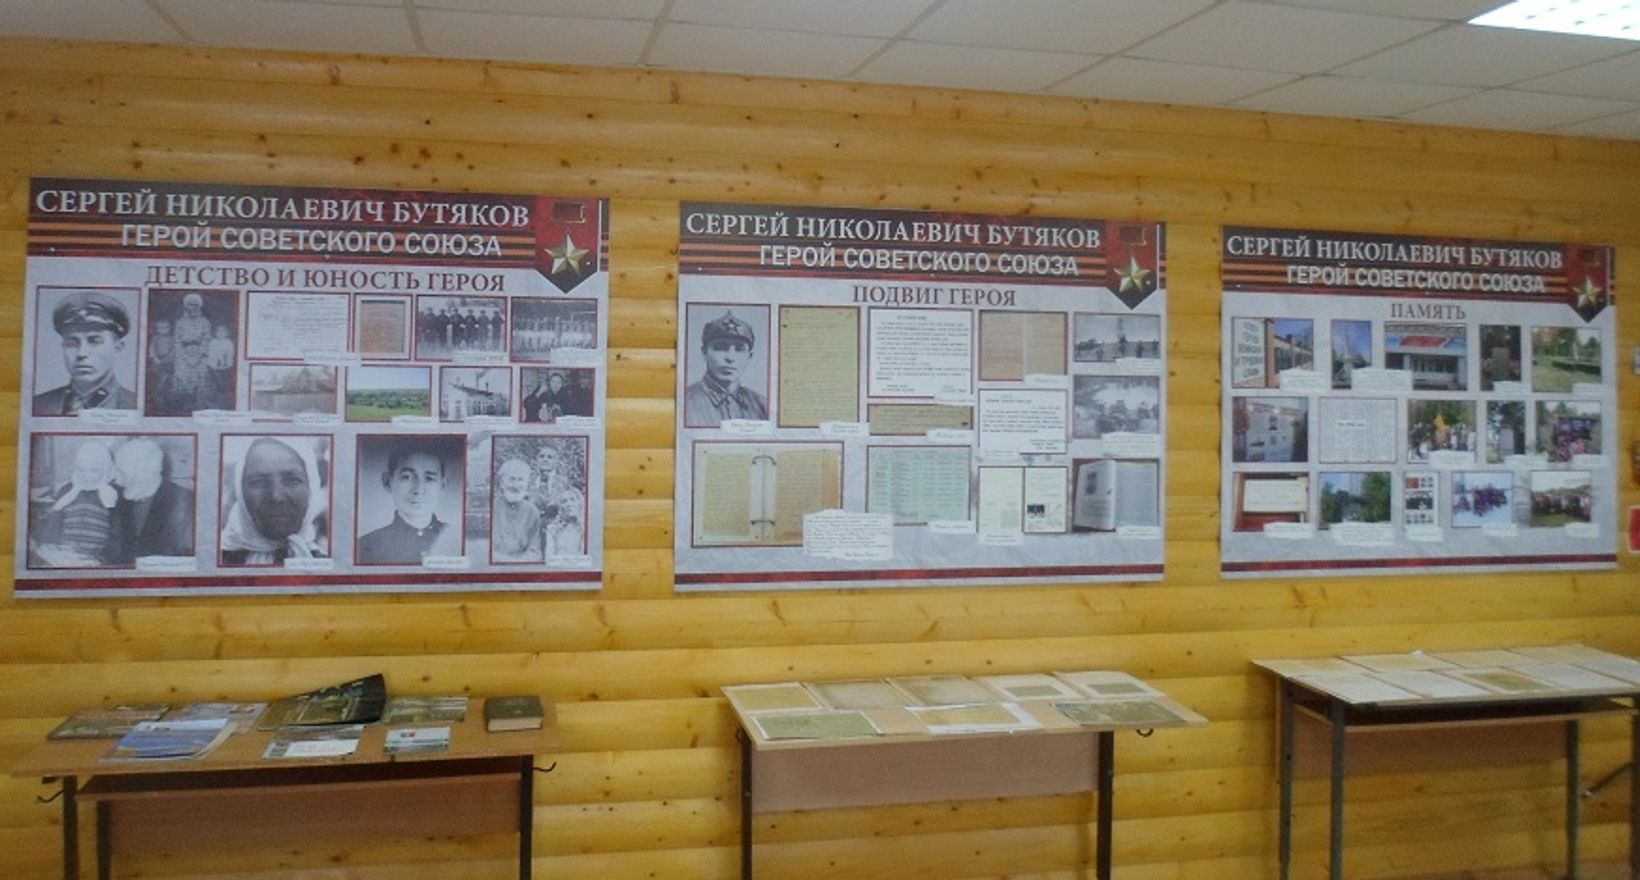 Нижне-Анчиковская сельская библиотека-музей С.Бутякова